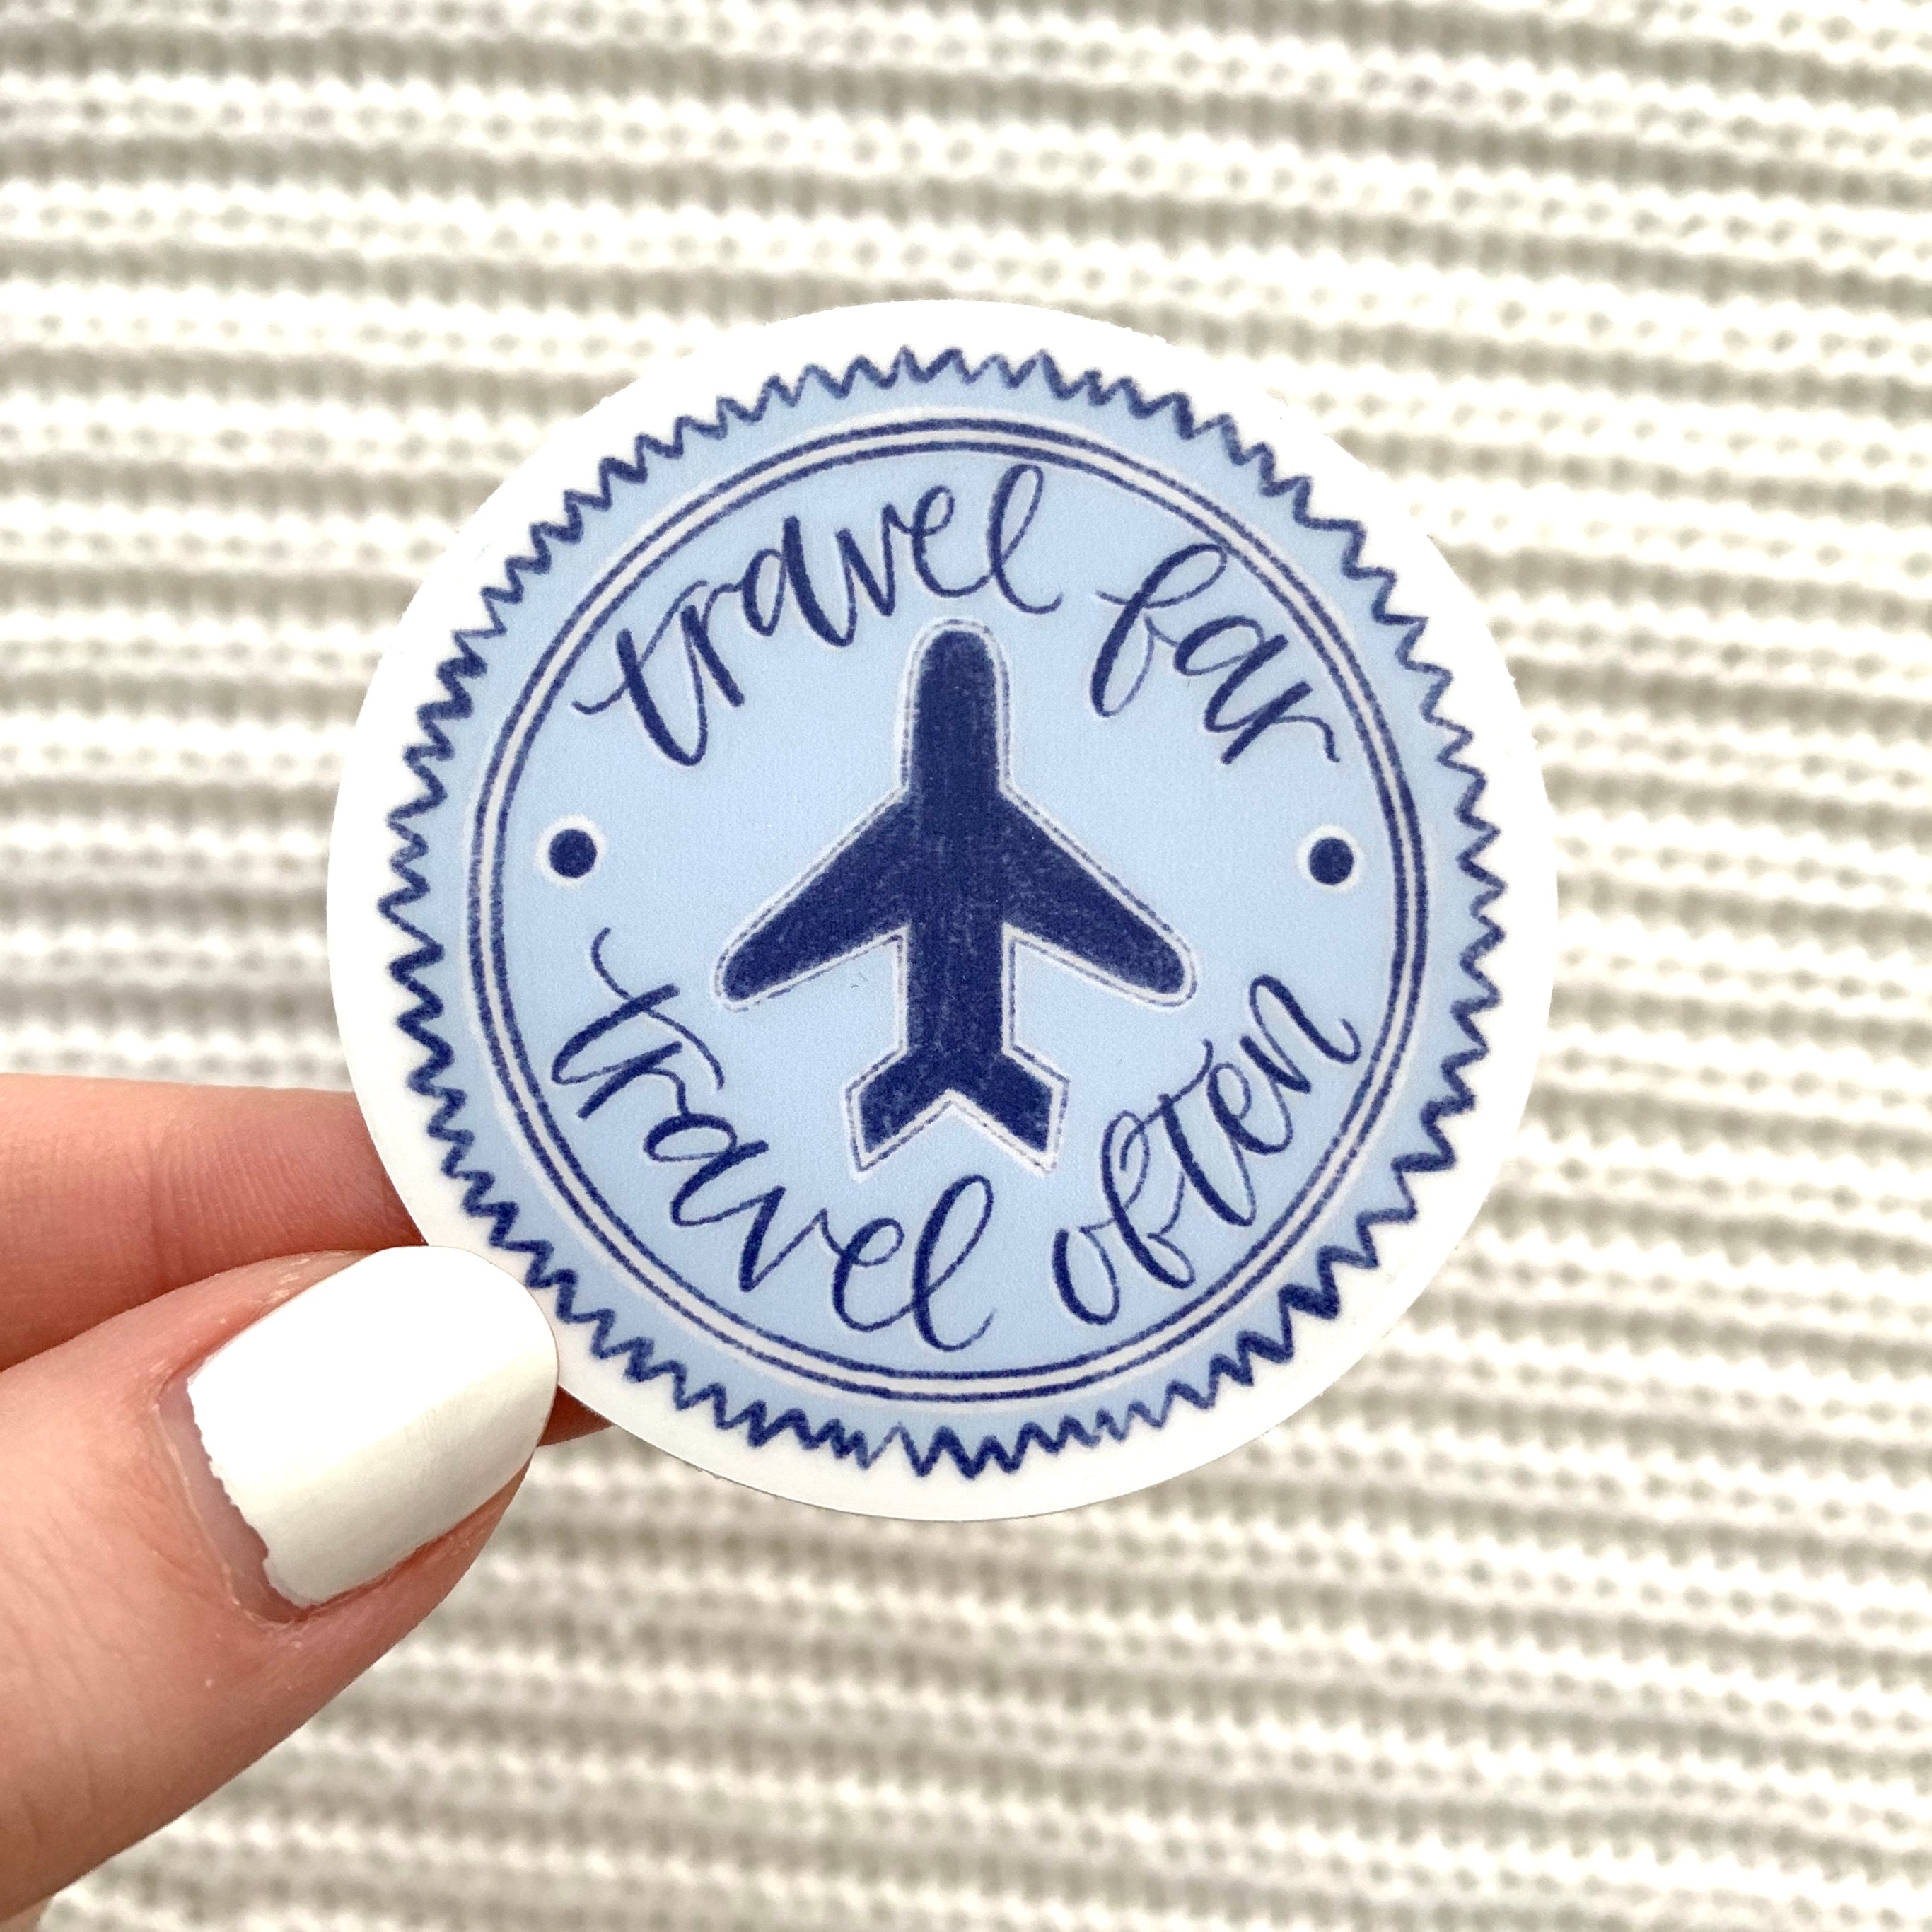 Travel Far, Travel Often Sticker